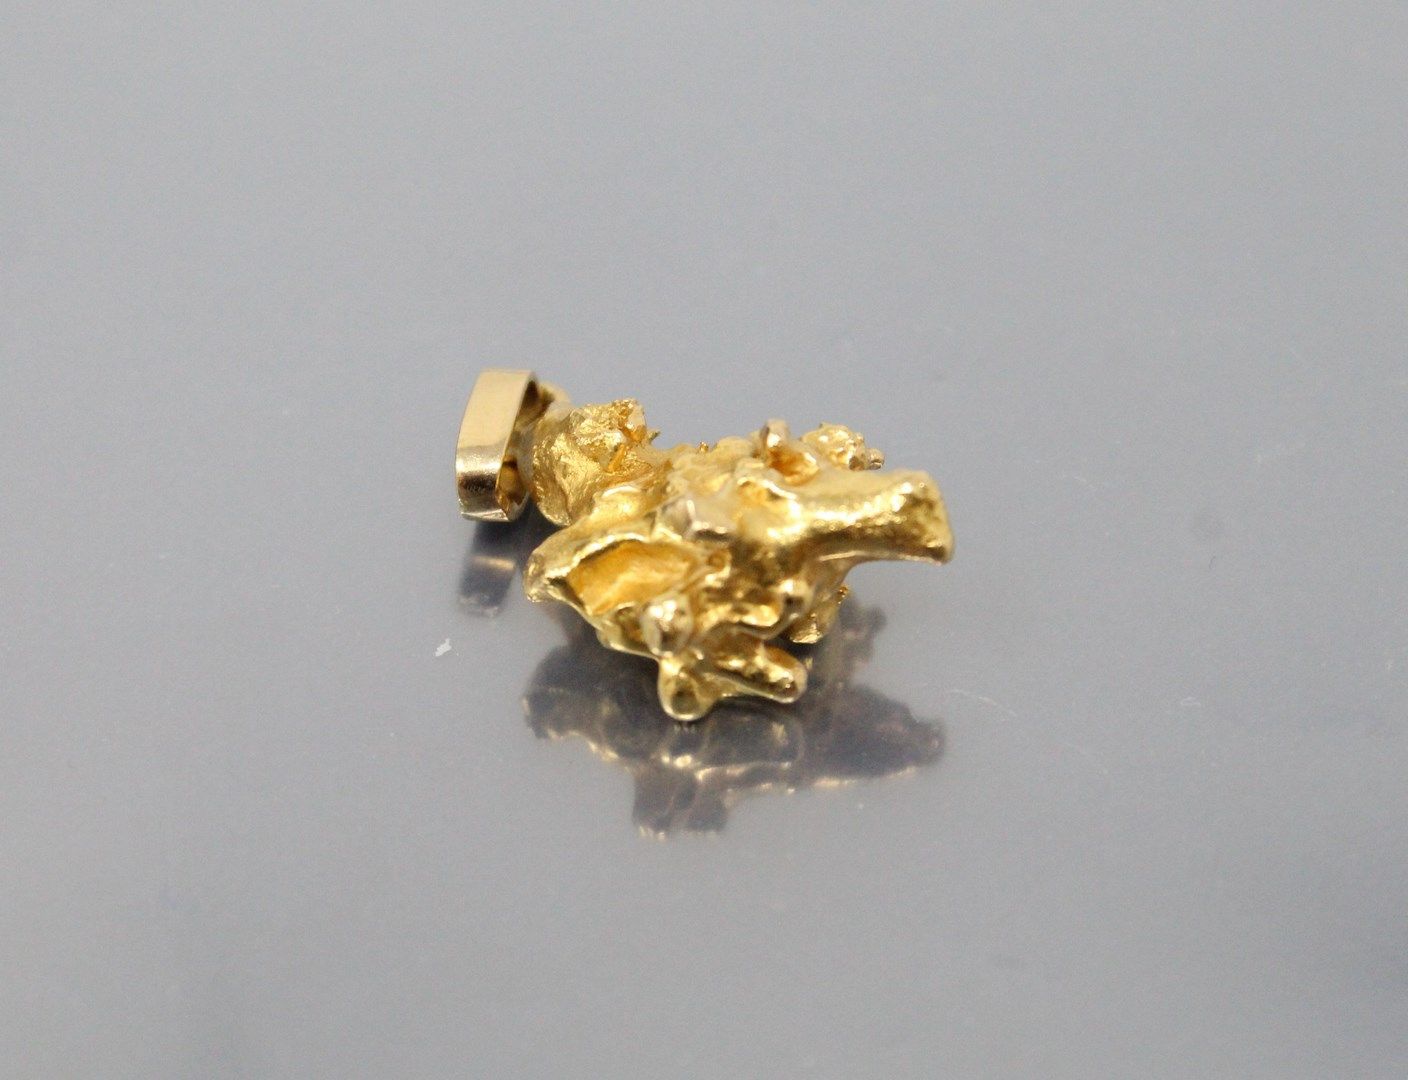 Null Ciondolo in oro giallo 18k (750) che acconcia una pepita d'oro.

Peso: 11,6&hellip;